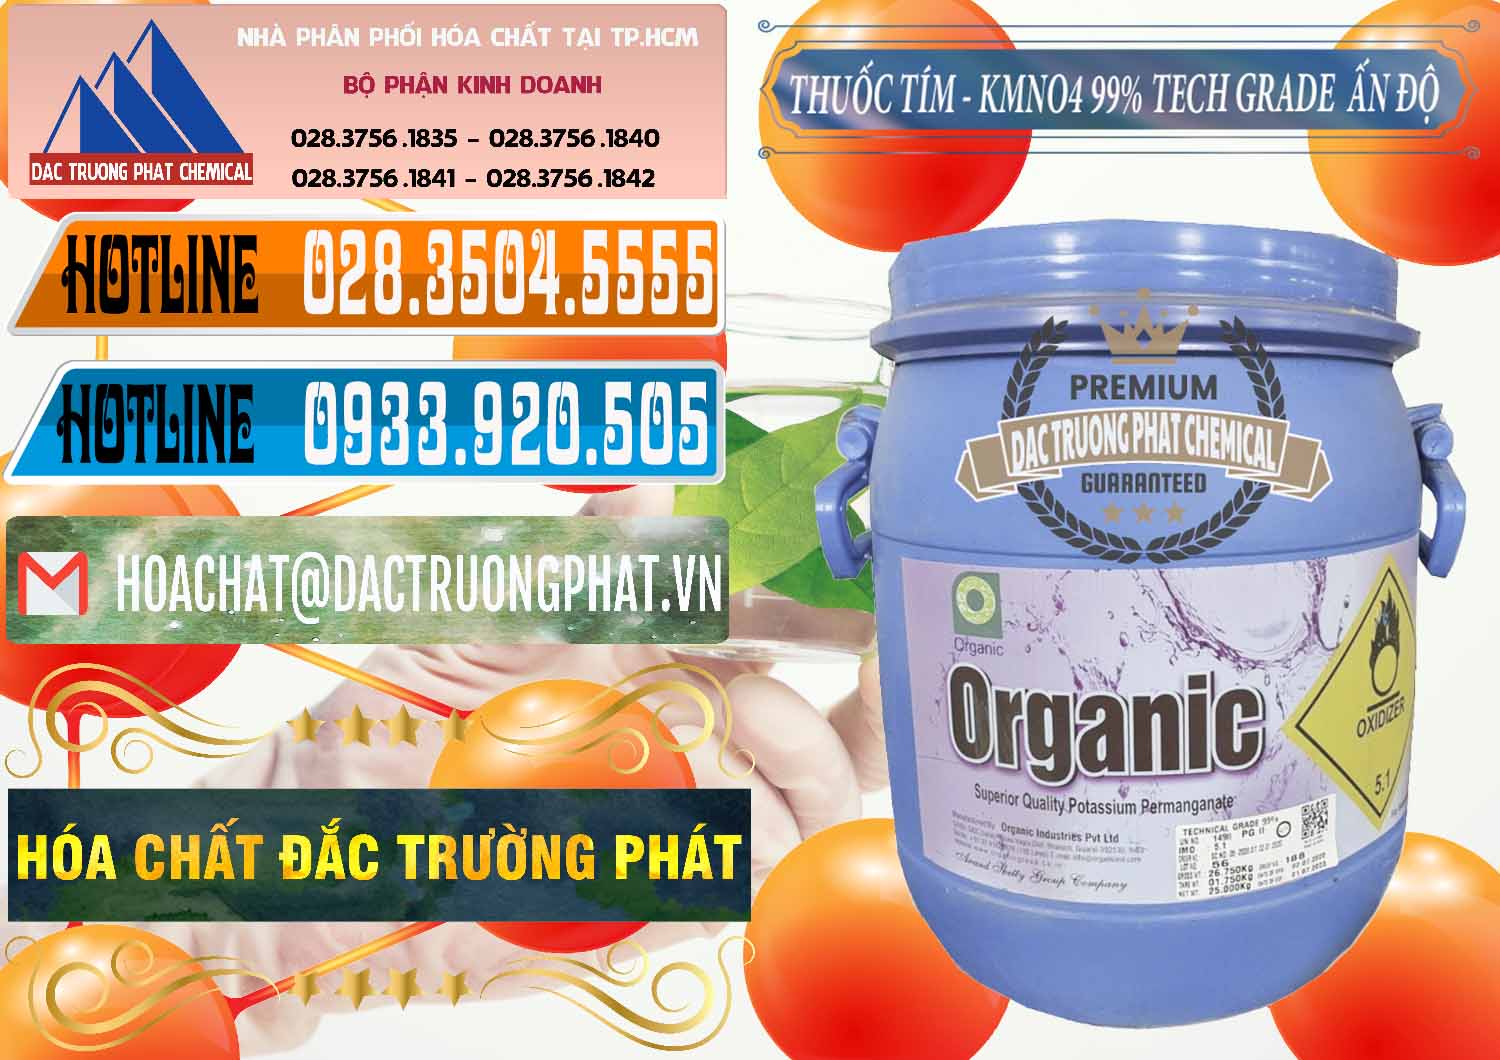 Cty chuyên bán ( phân phối ) Thuốc Tím - KMNO4 99% Organic Group Ấn Độ India - 0250 - Nơi chuyên kinh doanh và cung cấp hóa chất tại TP.HCM - stmp.net